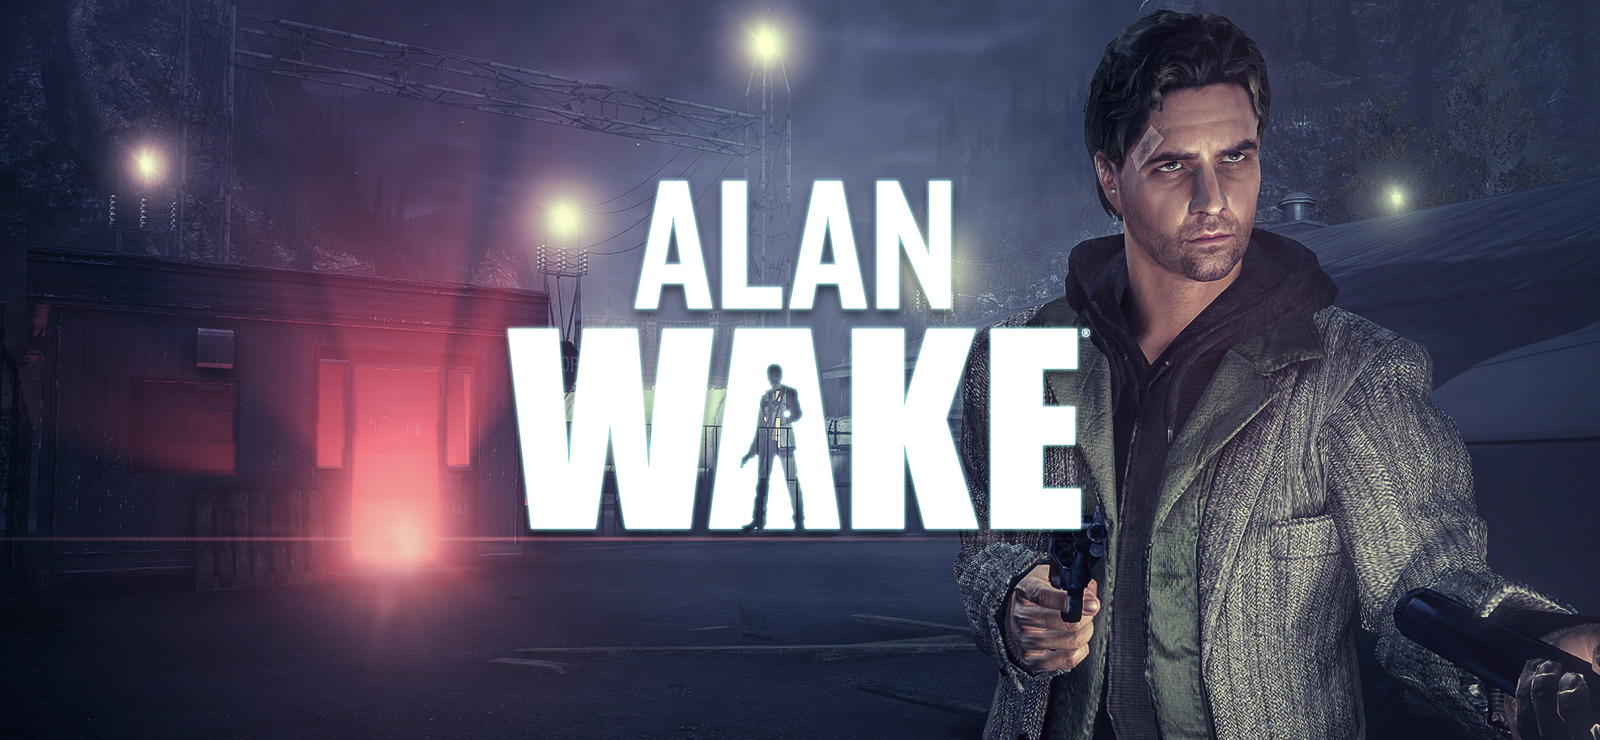 Alan Wake on